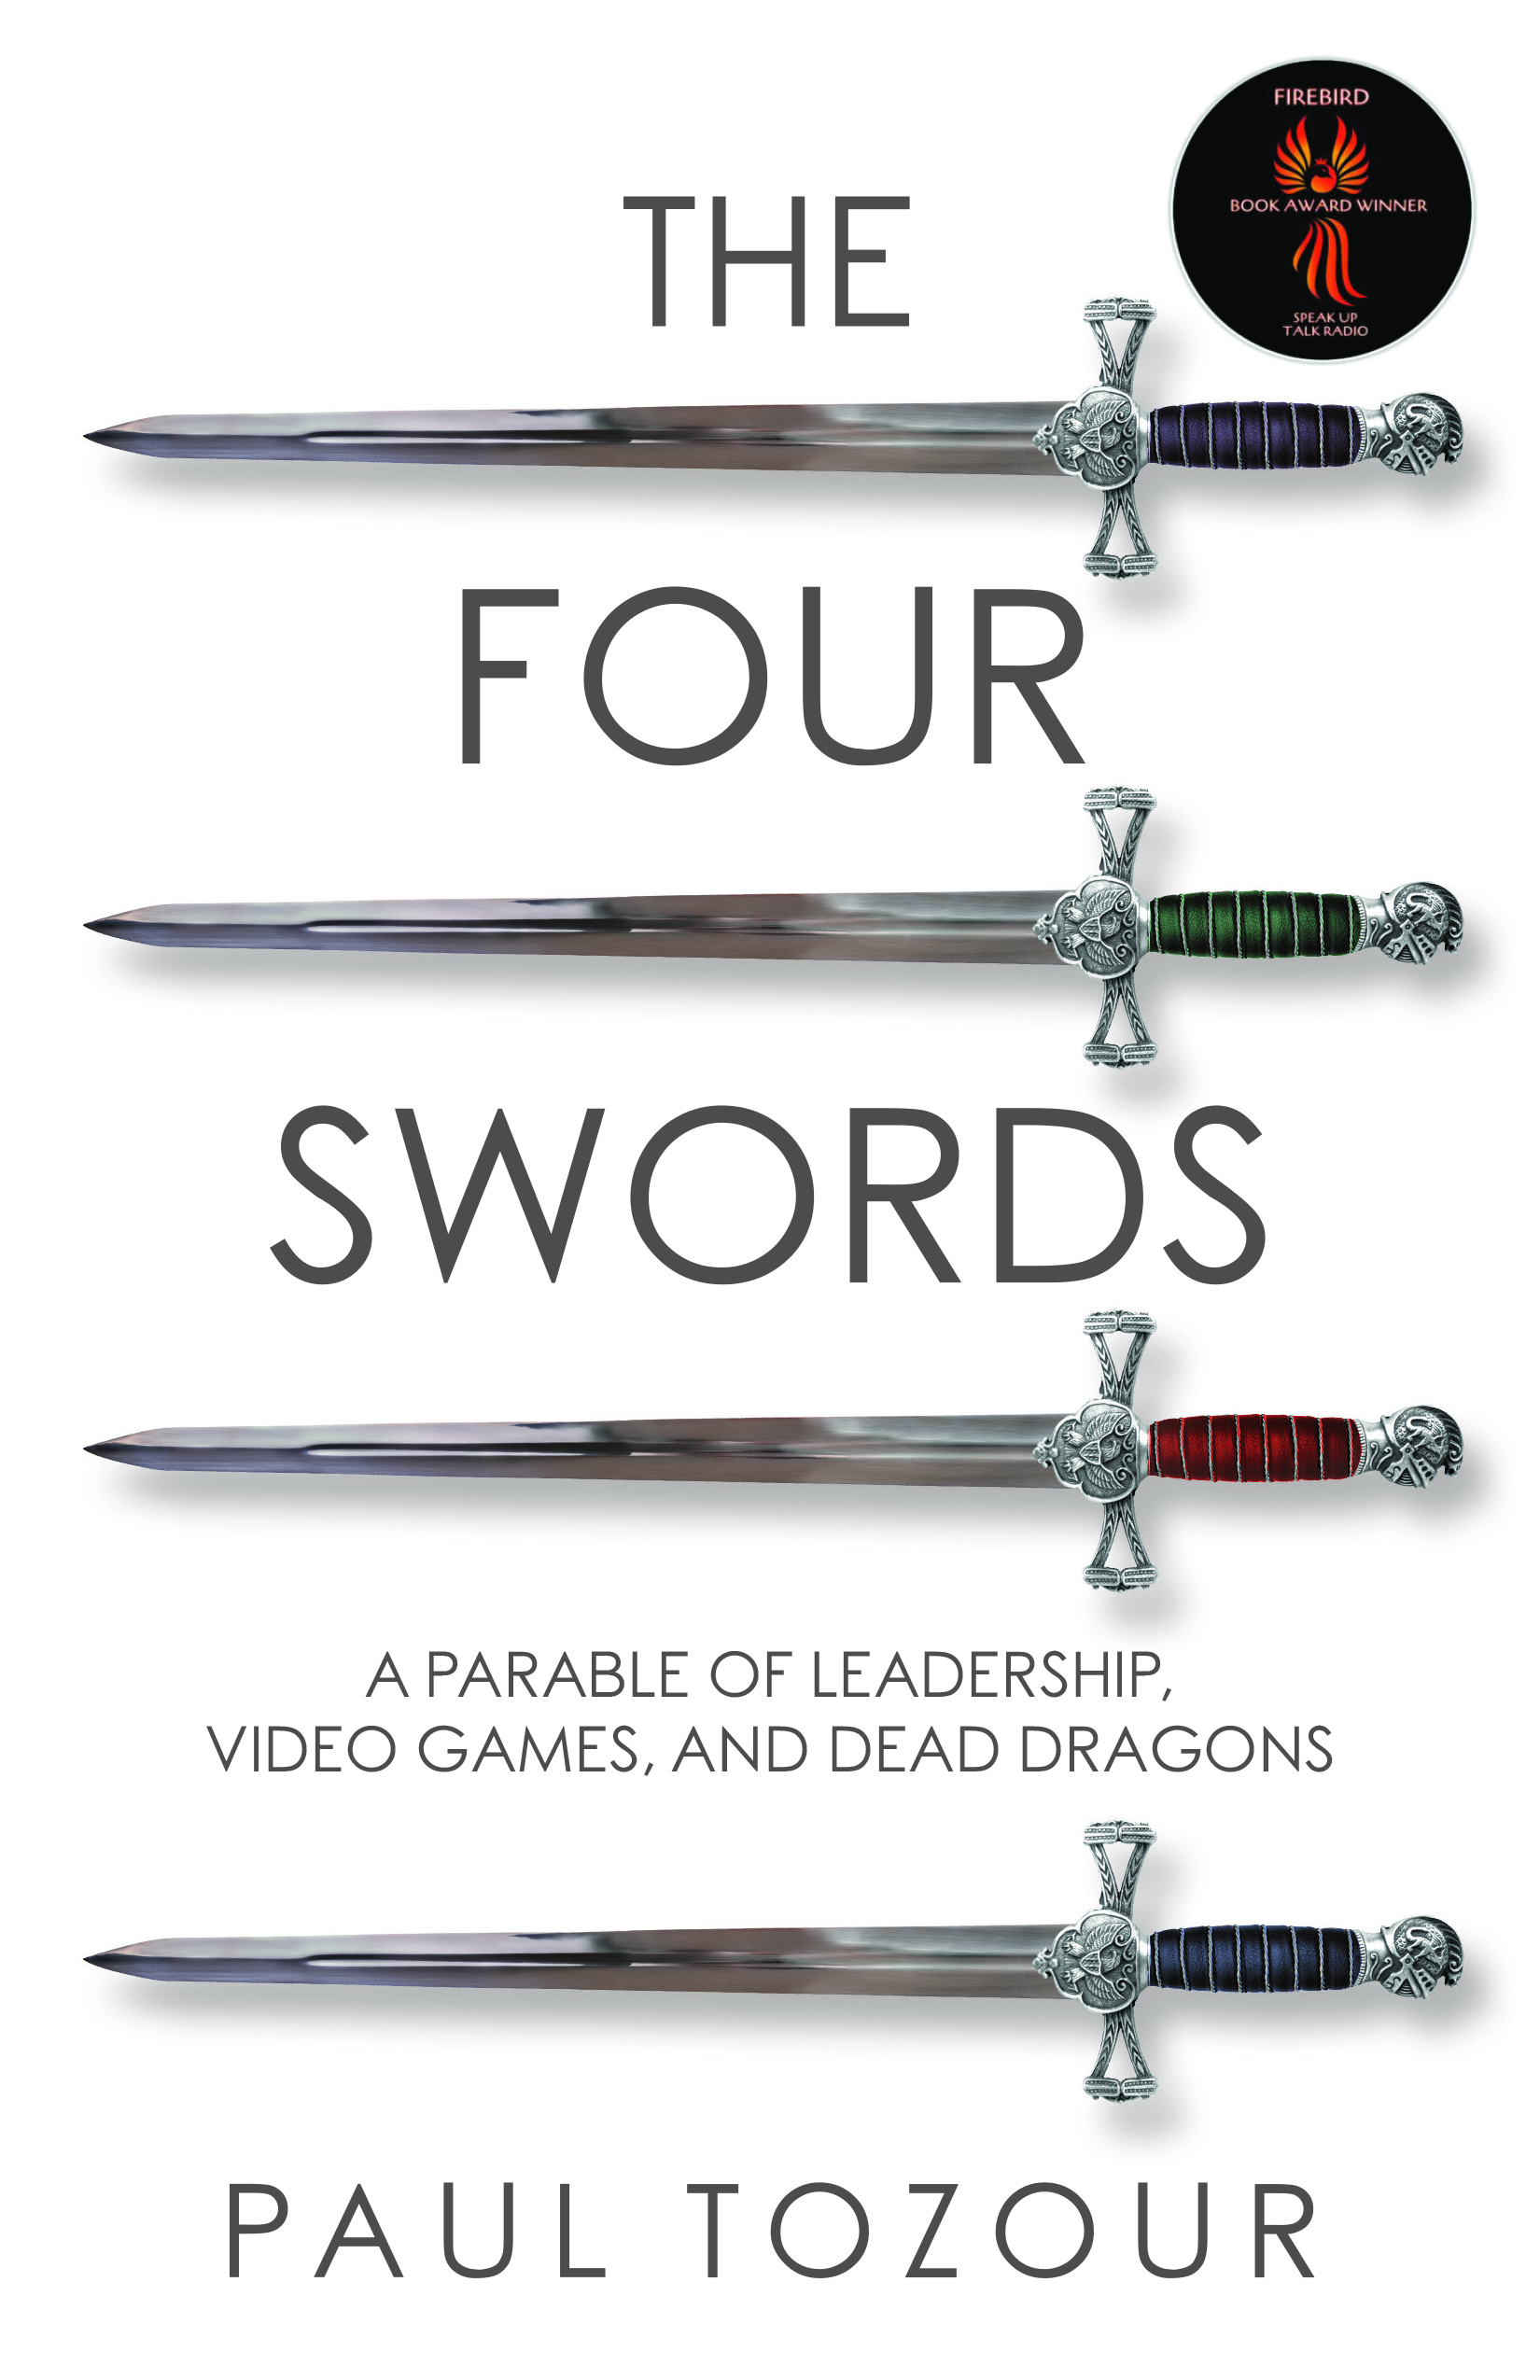 The Four Swords by Paul Tozour